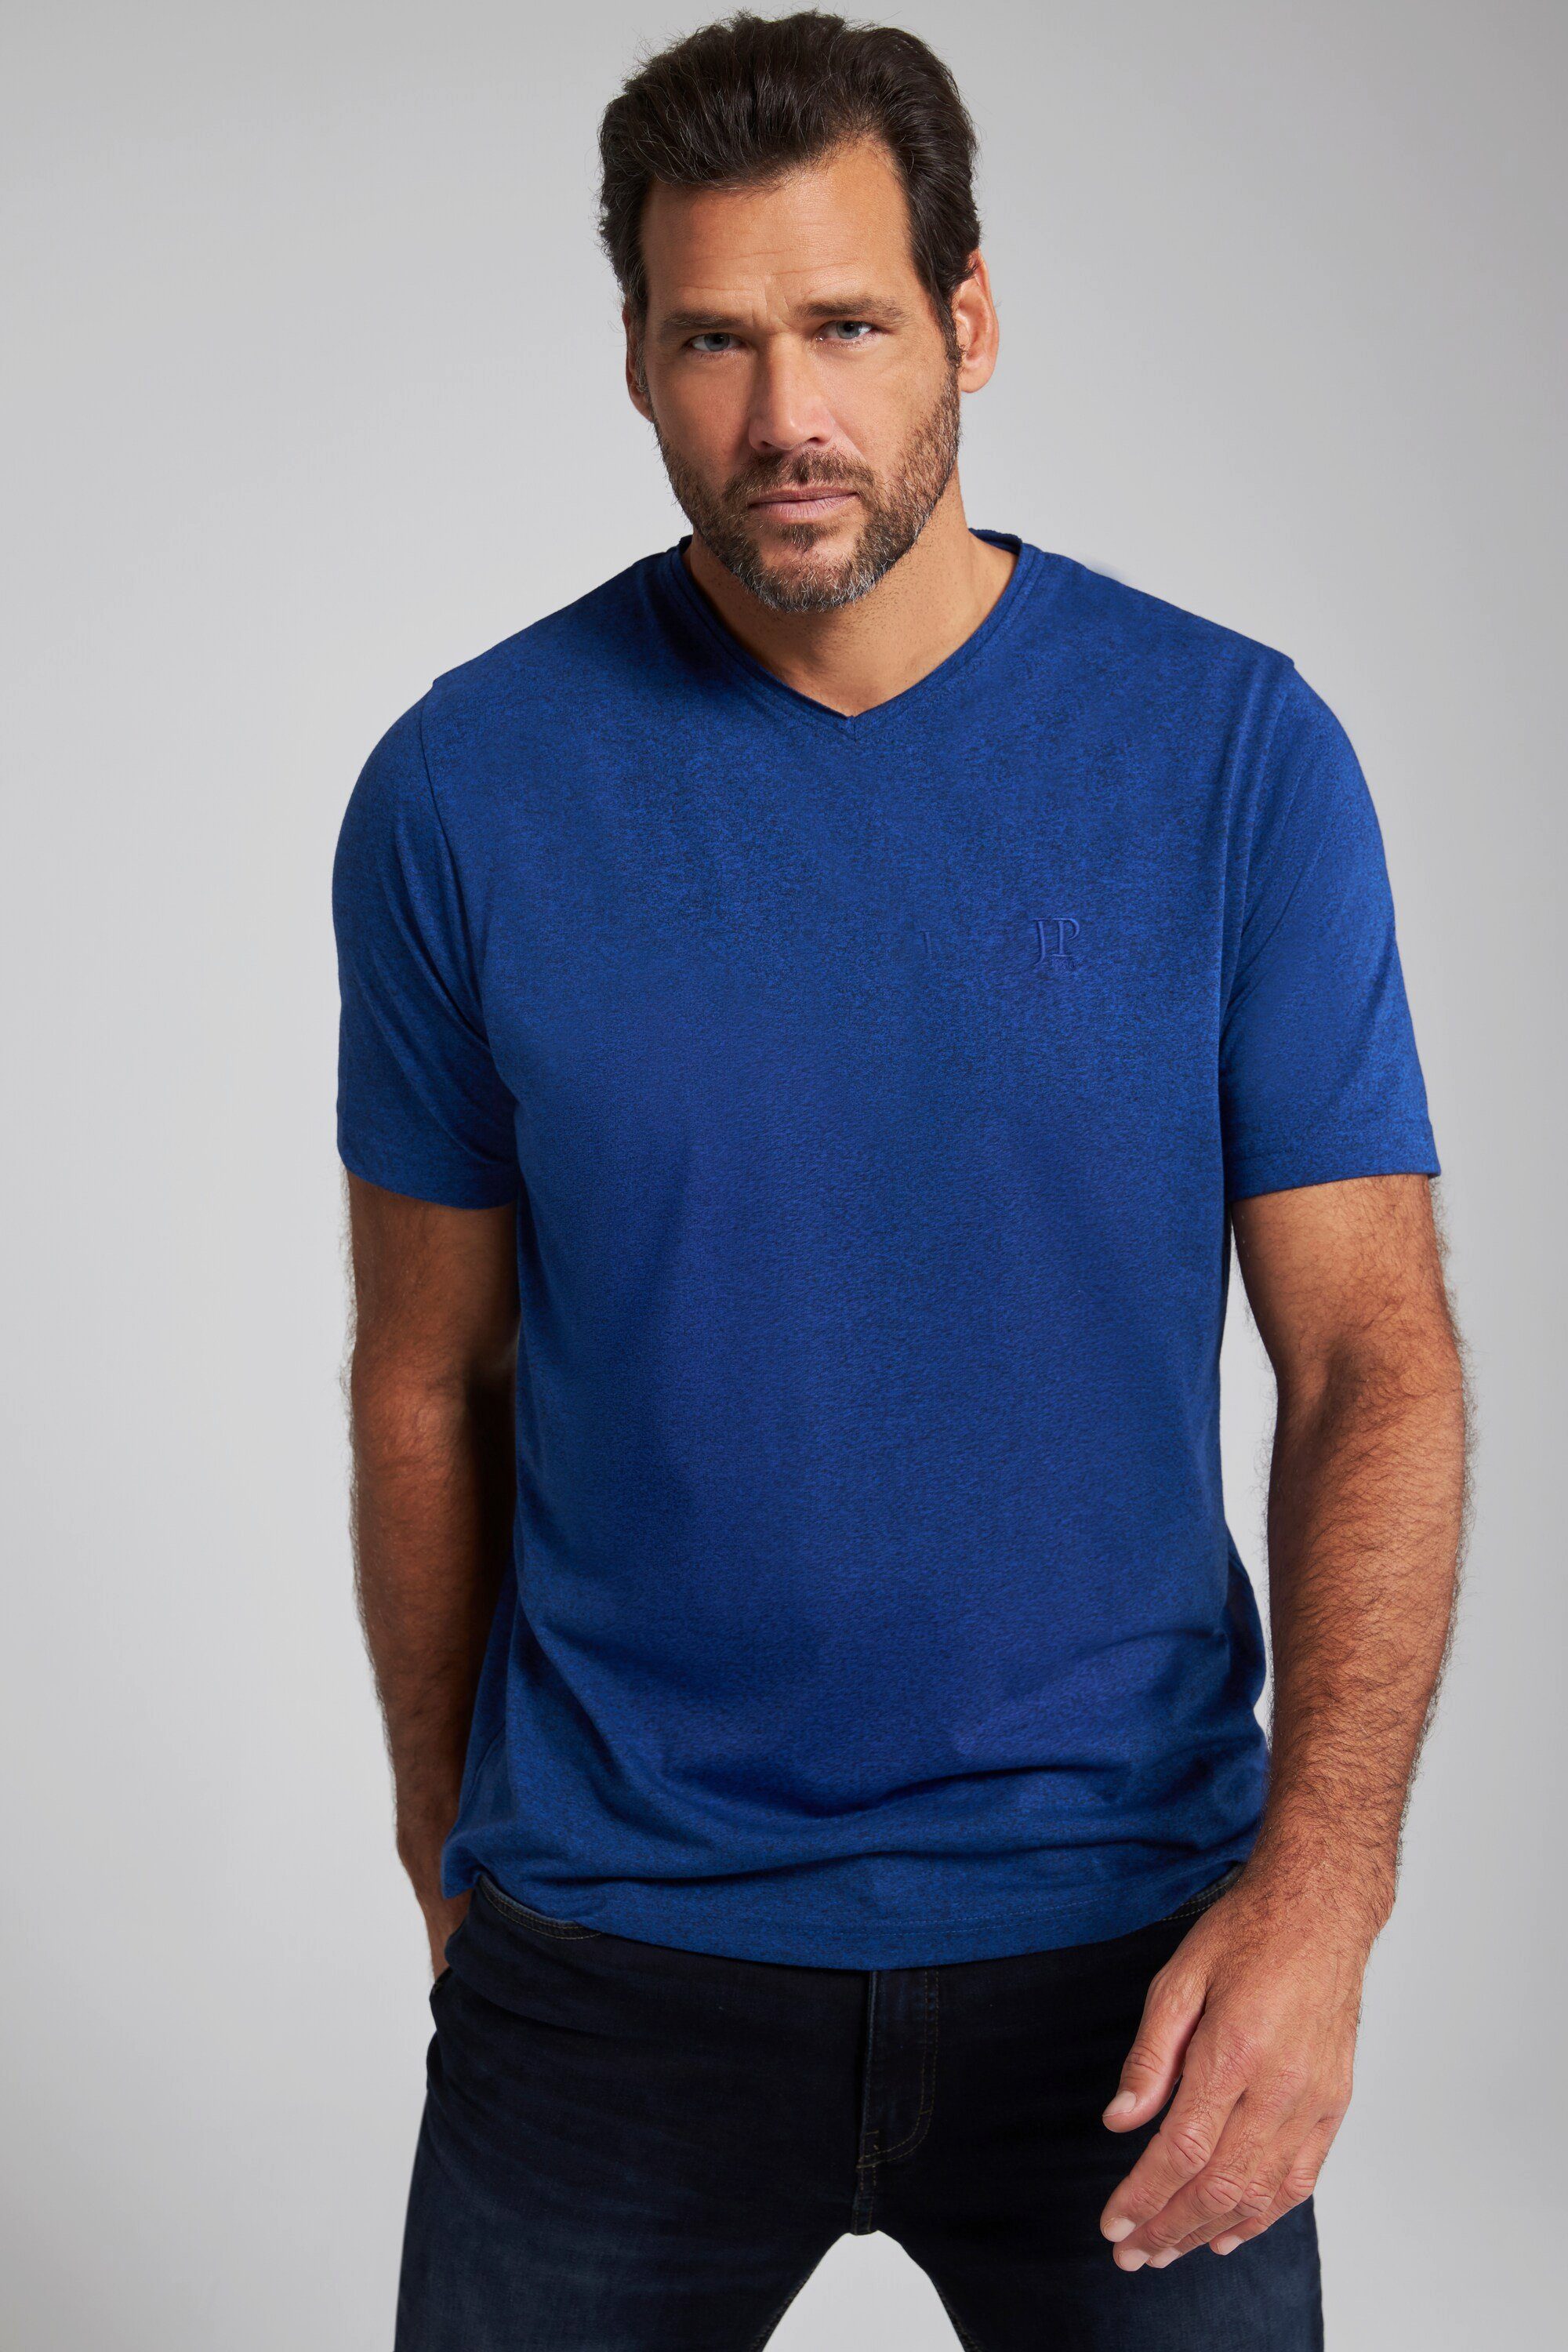 T-Shirt T-Shirt Halbarm clematisblau V-Ausschnitt JP1880